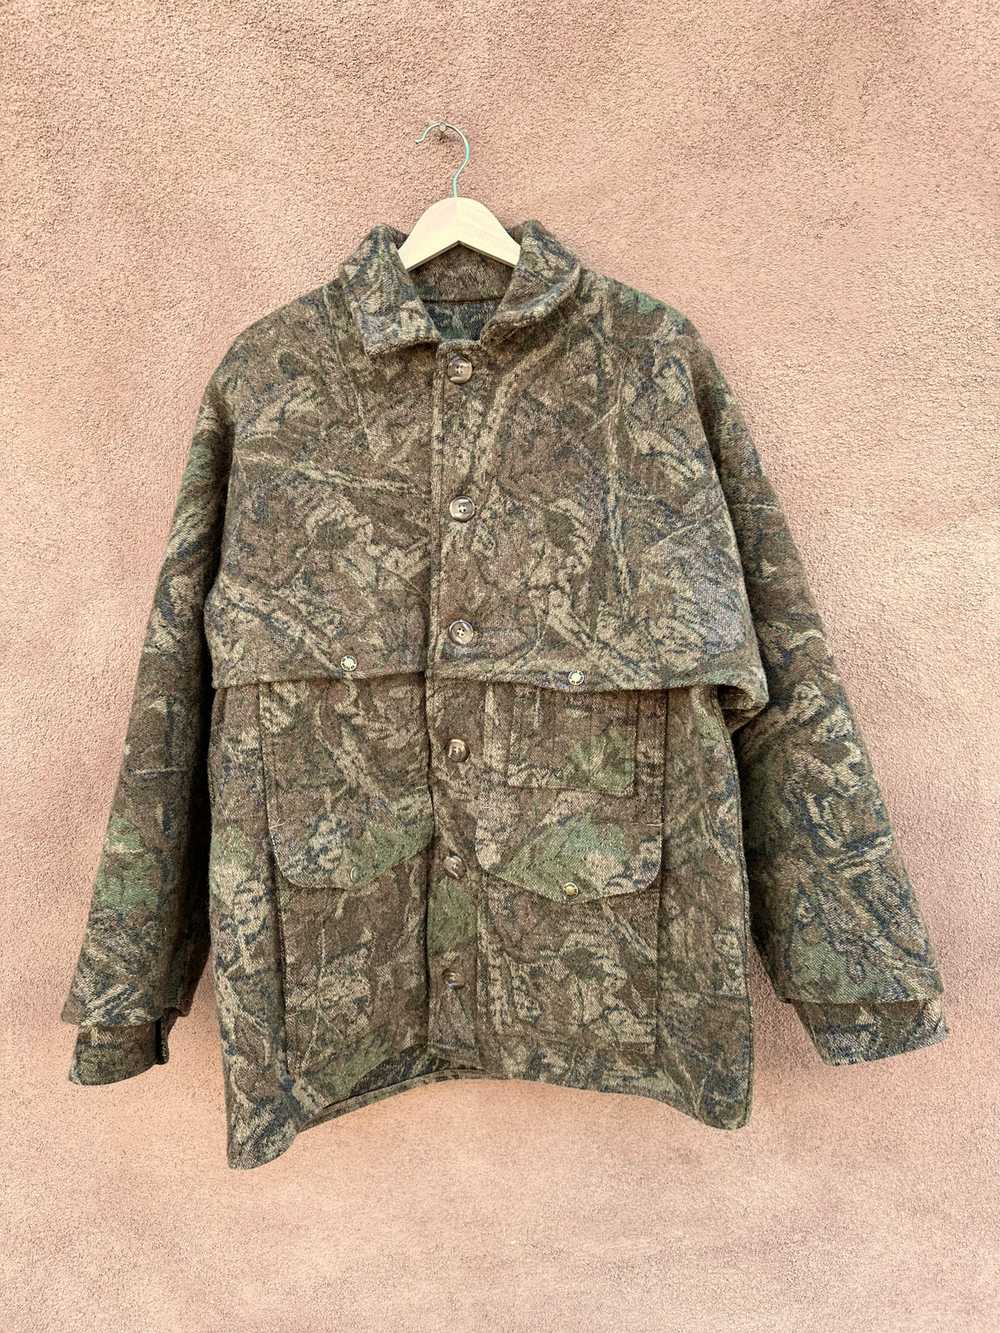 Camo Filson Hunting Jacket Style 83TM - Size 46 F… - image 1